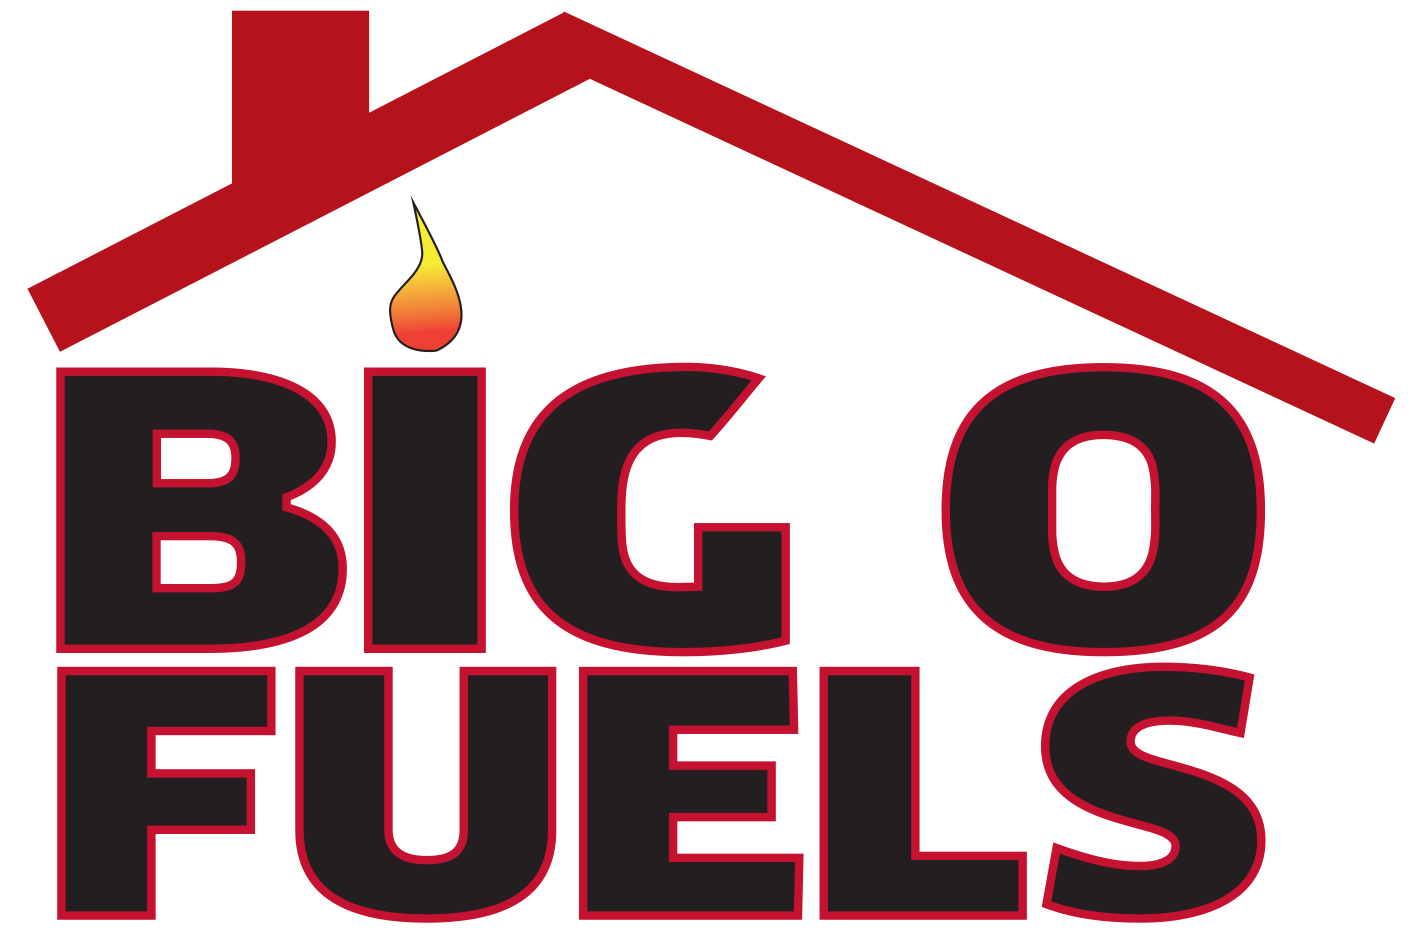 Big O Fuels